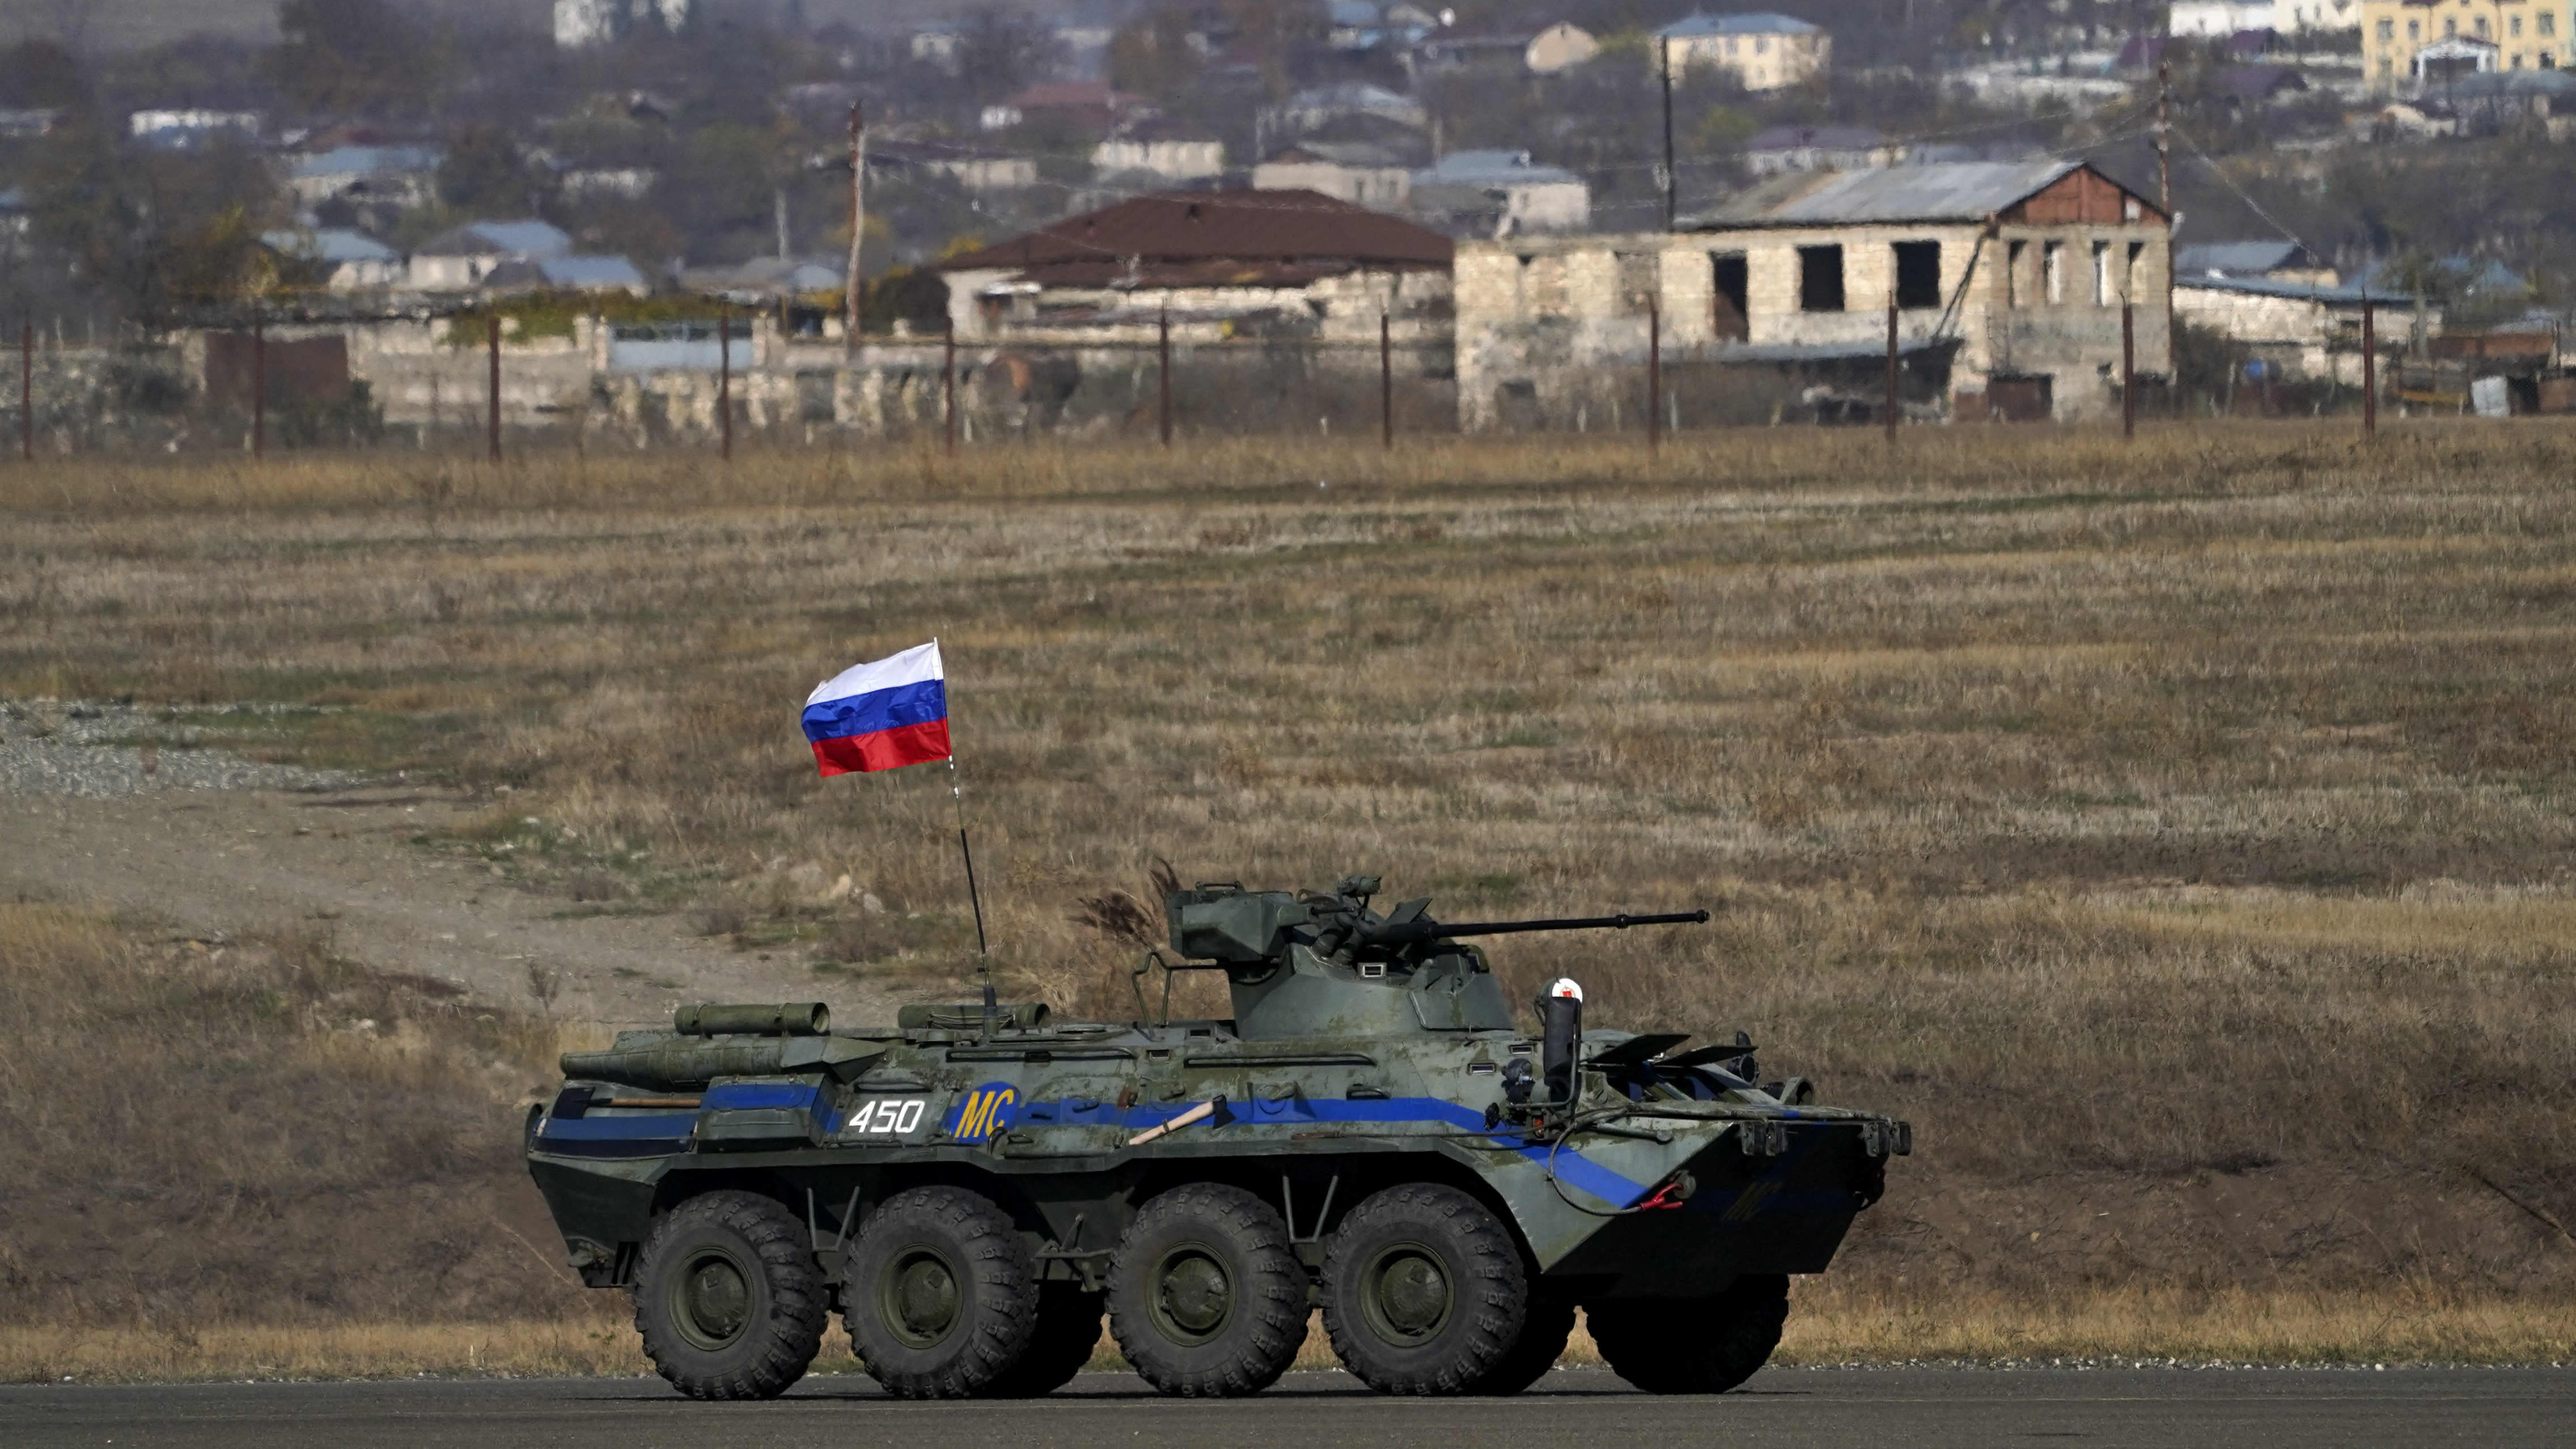 Kuvassa näkyy venäläinen panssariajoneuvo ja taustalla pieni vuoristokylä.